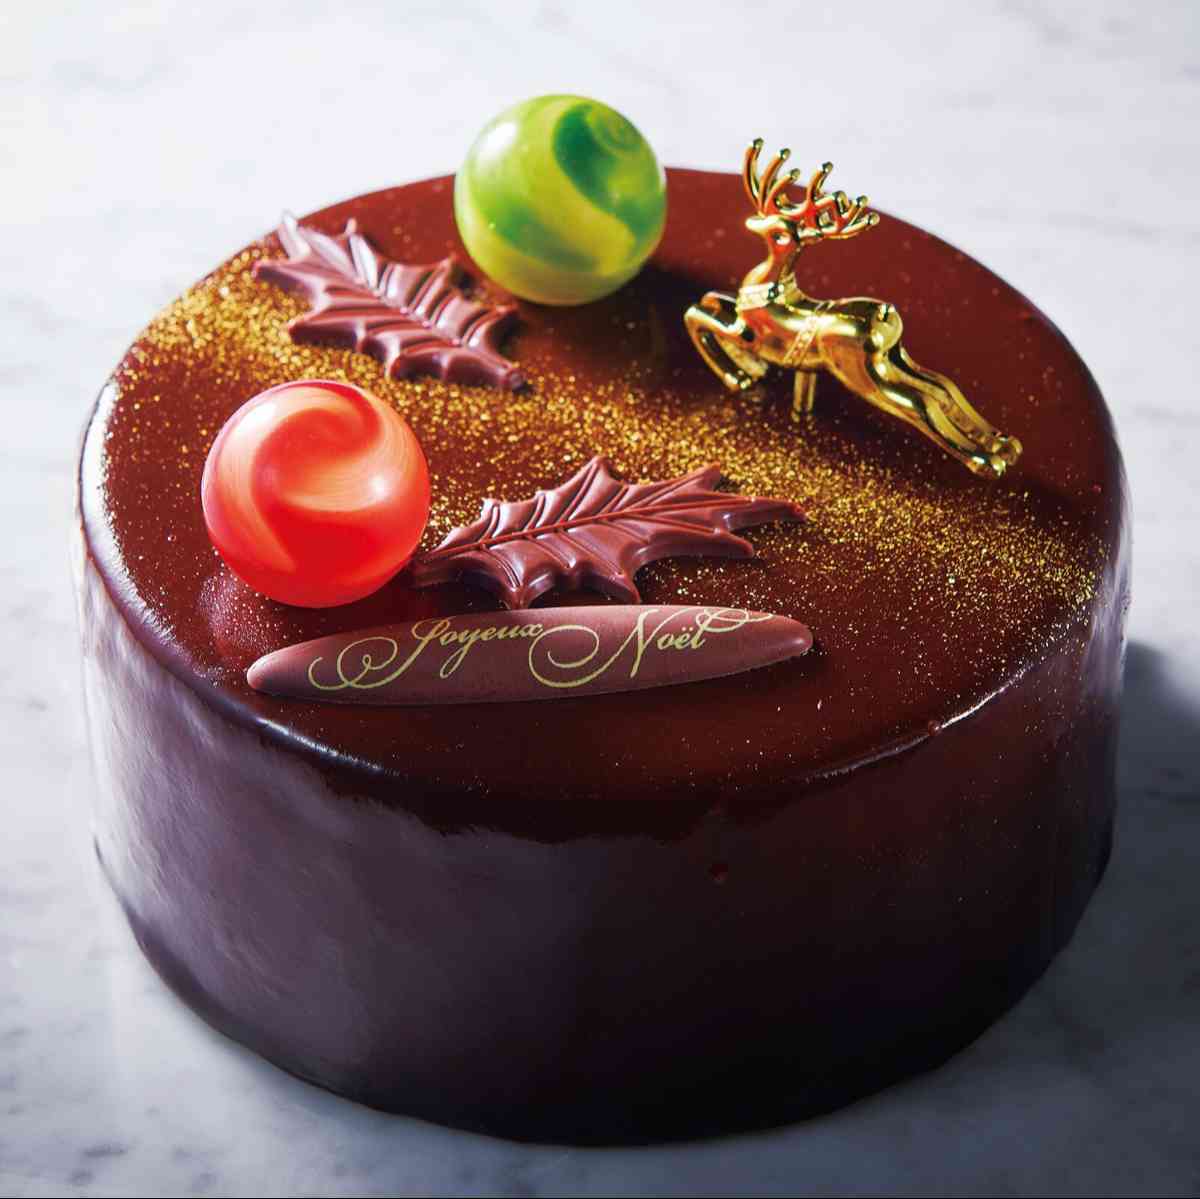 シャトレーゼのクリスマスケーキ「Xmasプレミアム・ミロワールショコラ」